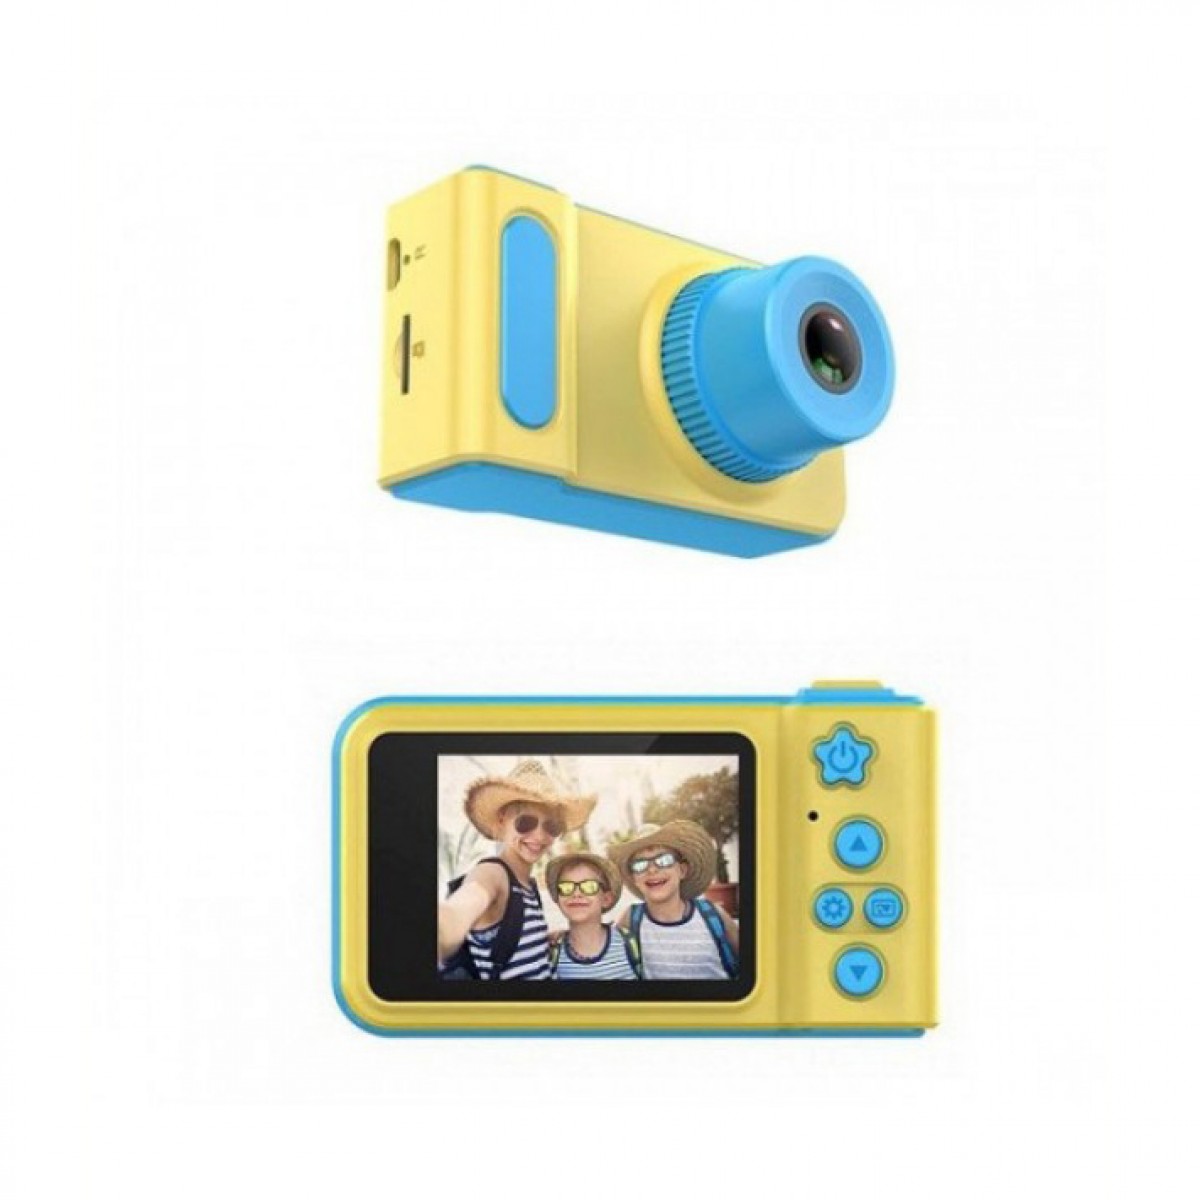 μίνι ψηφιακή φωτογραφική μηχανή για παιδιά td-kd001